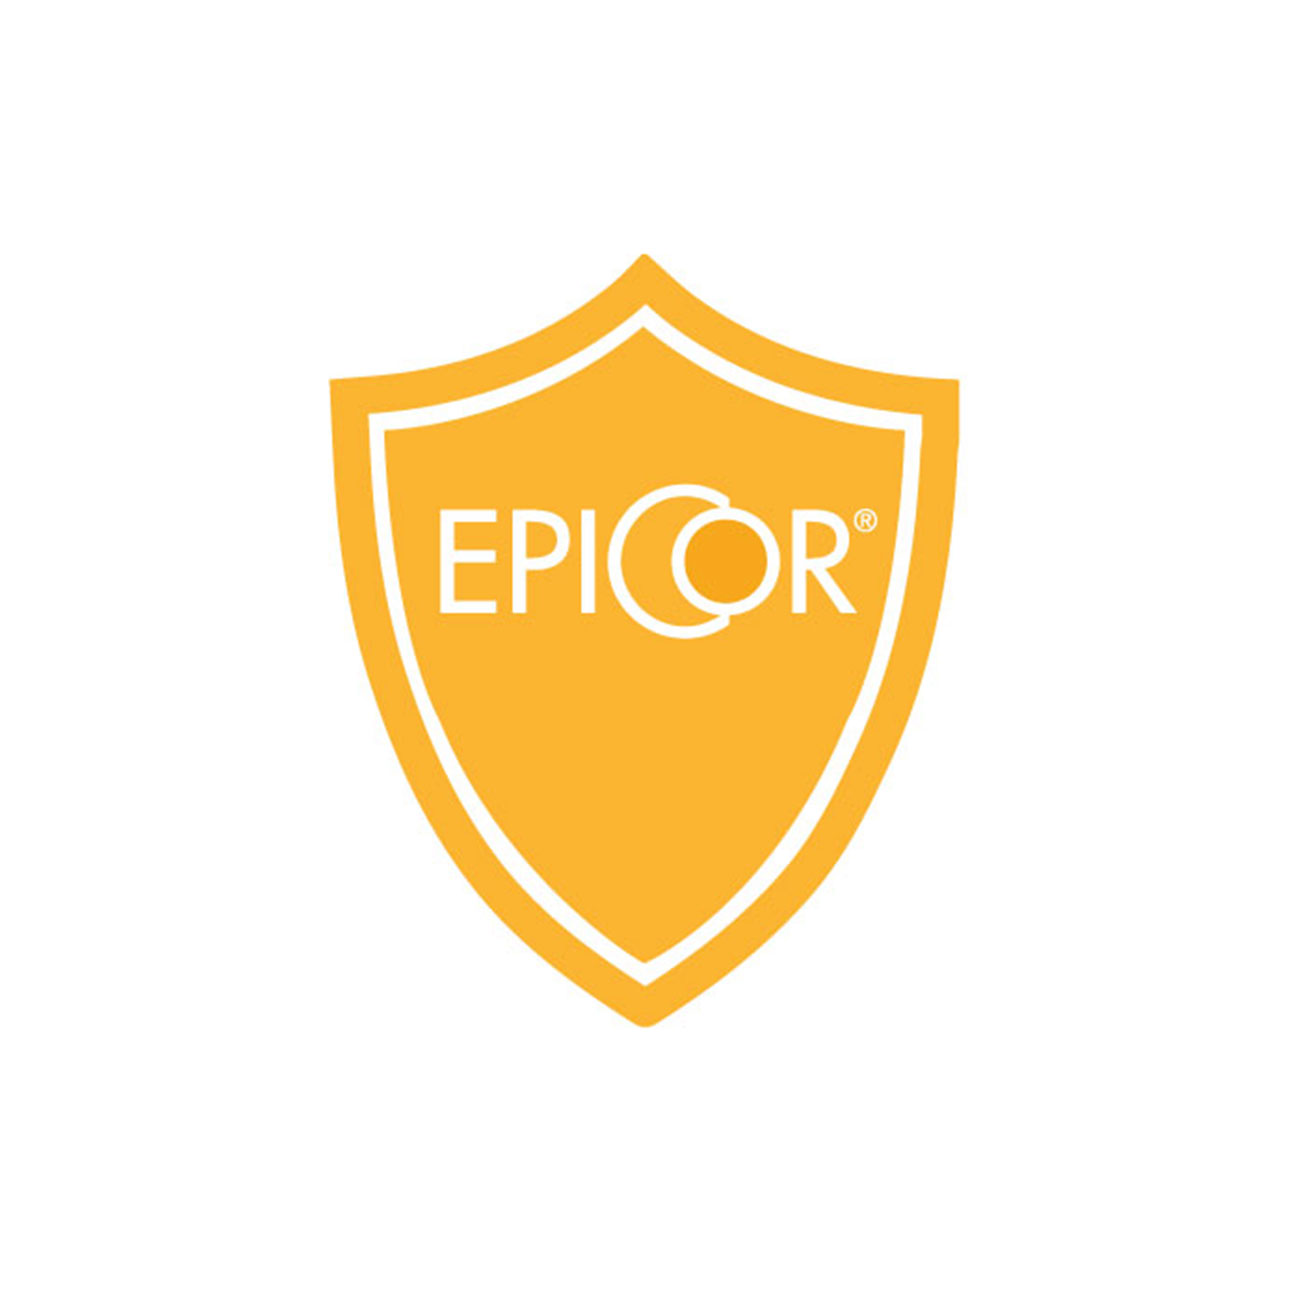 EpiCor® - kompletní doplněk stravy podporující imunitní zdraví - logo